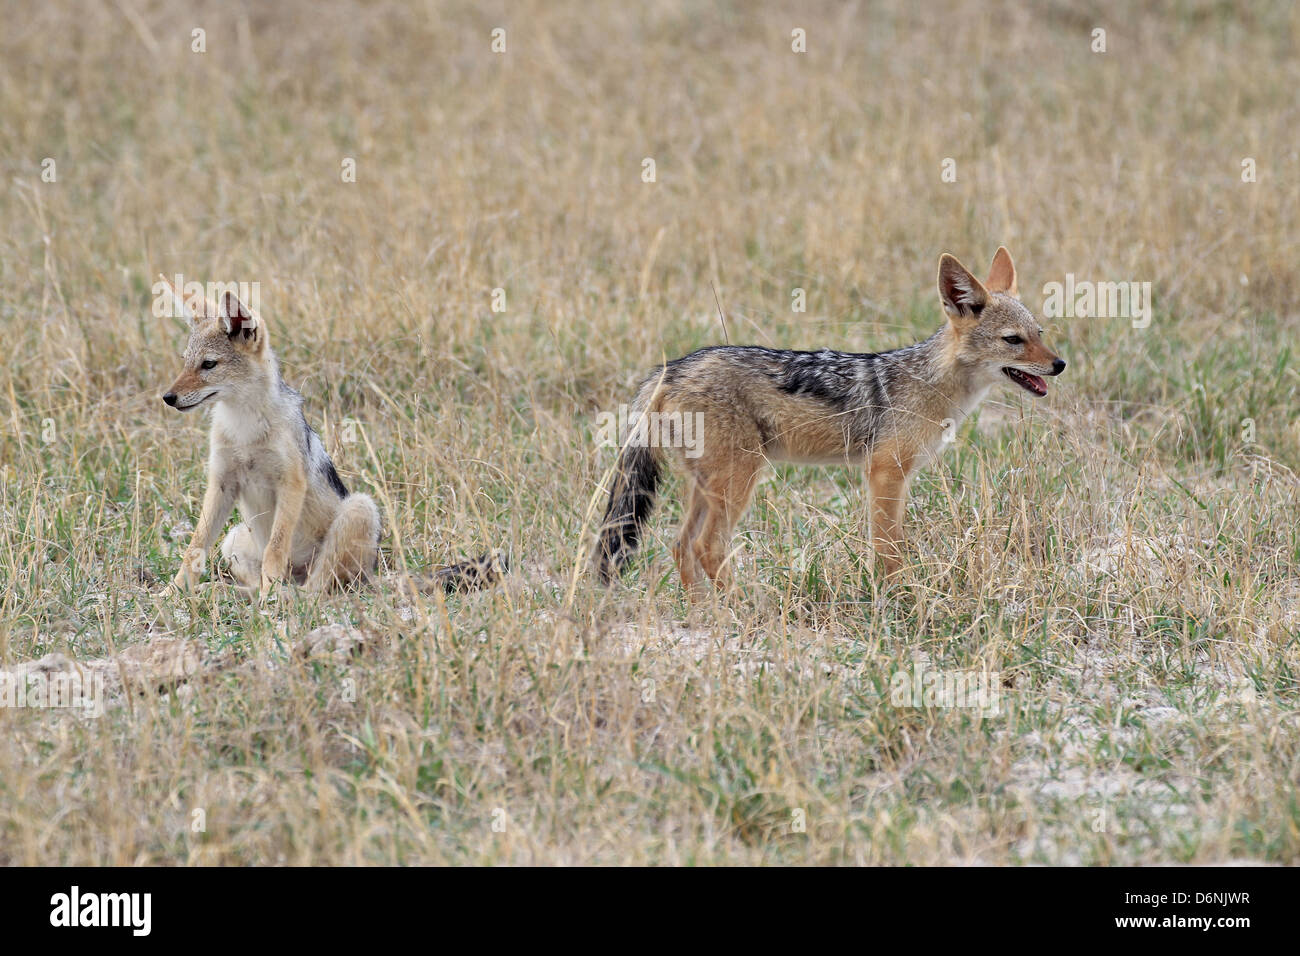 Two young jackals on the grassland of Moremi NP, Okavango Delta, Botswana Stock Photo